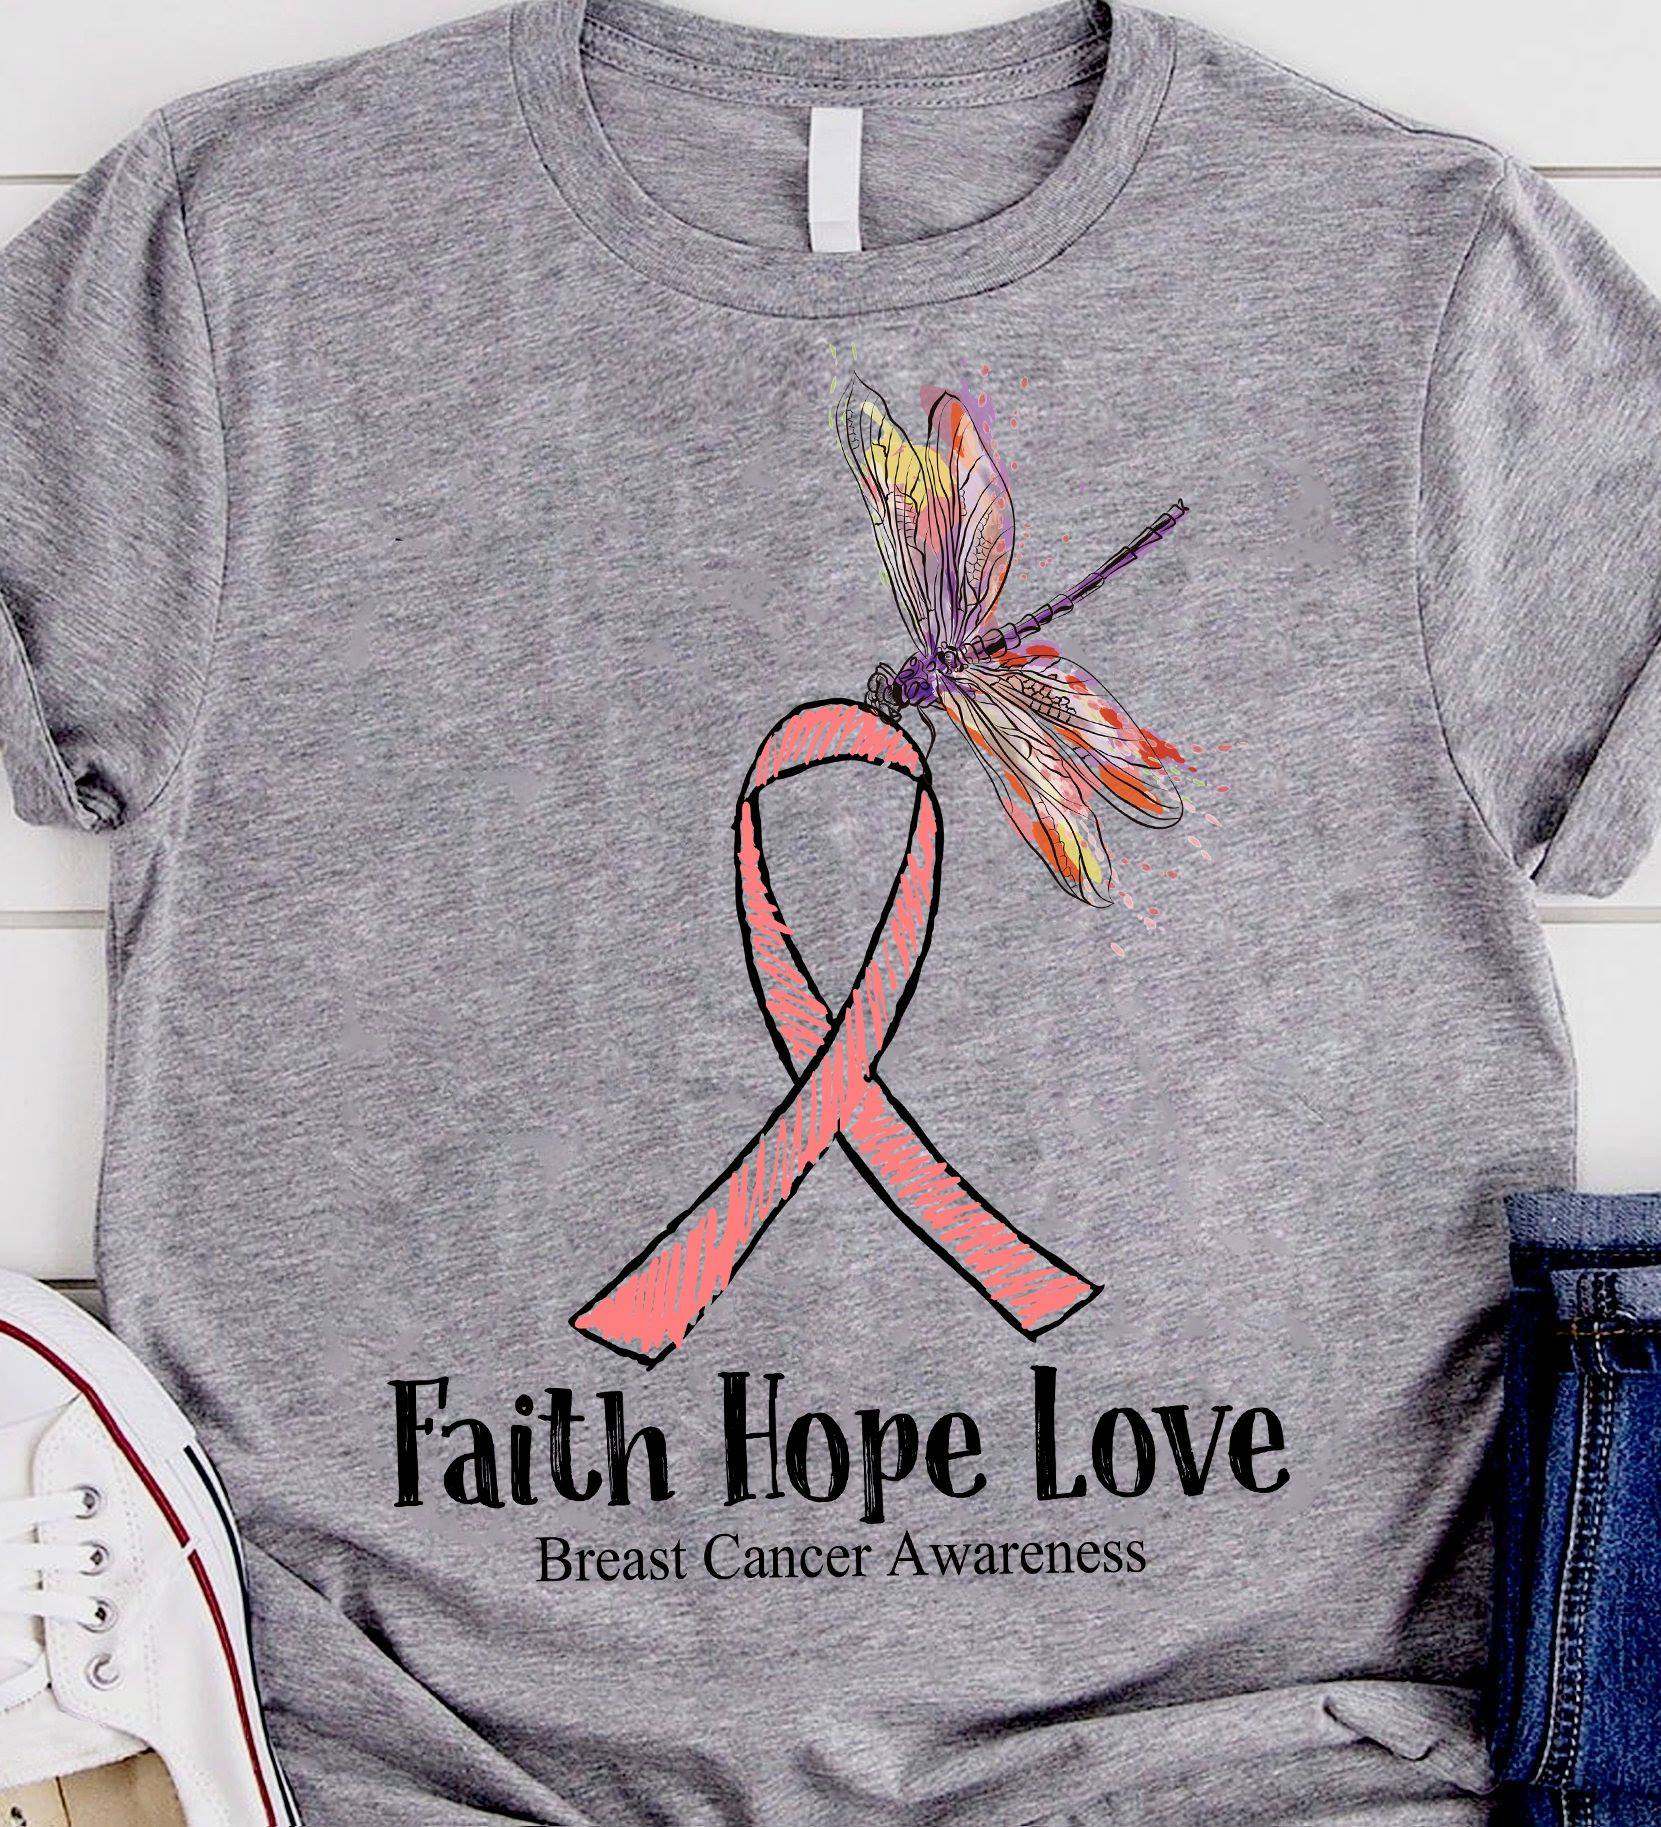 Faith hope love - Breast cancer awareness, dragon fly